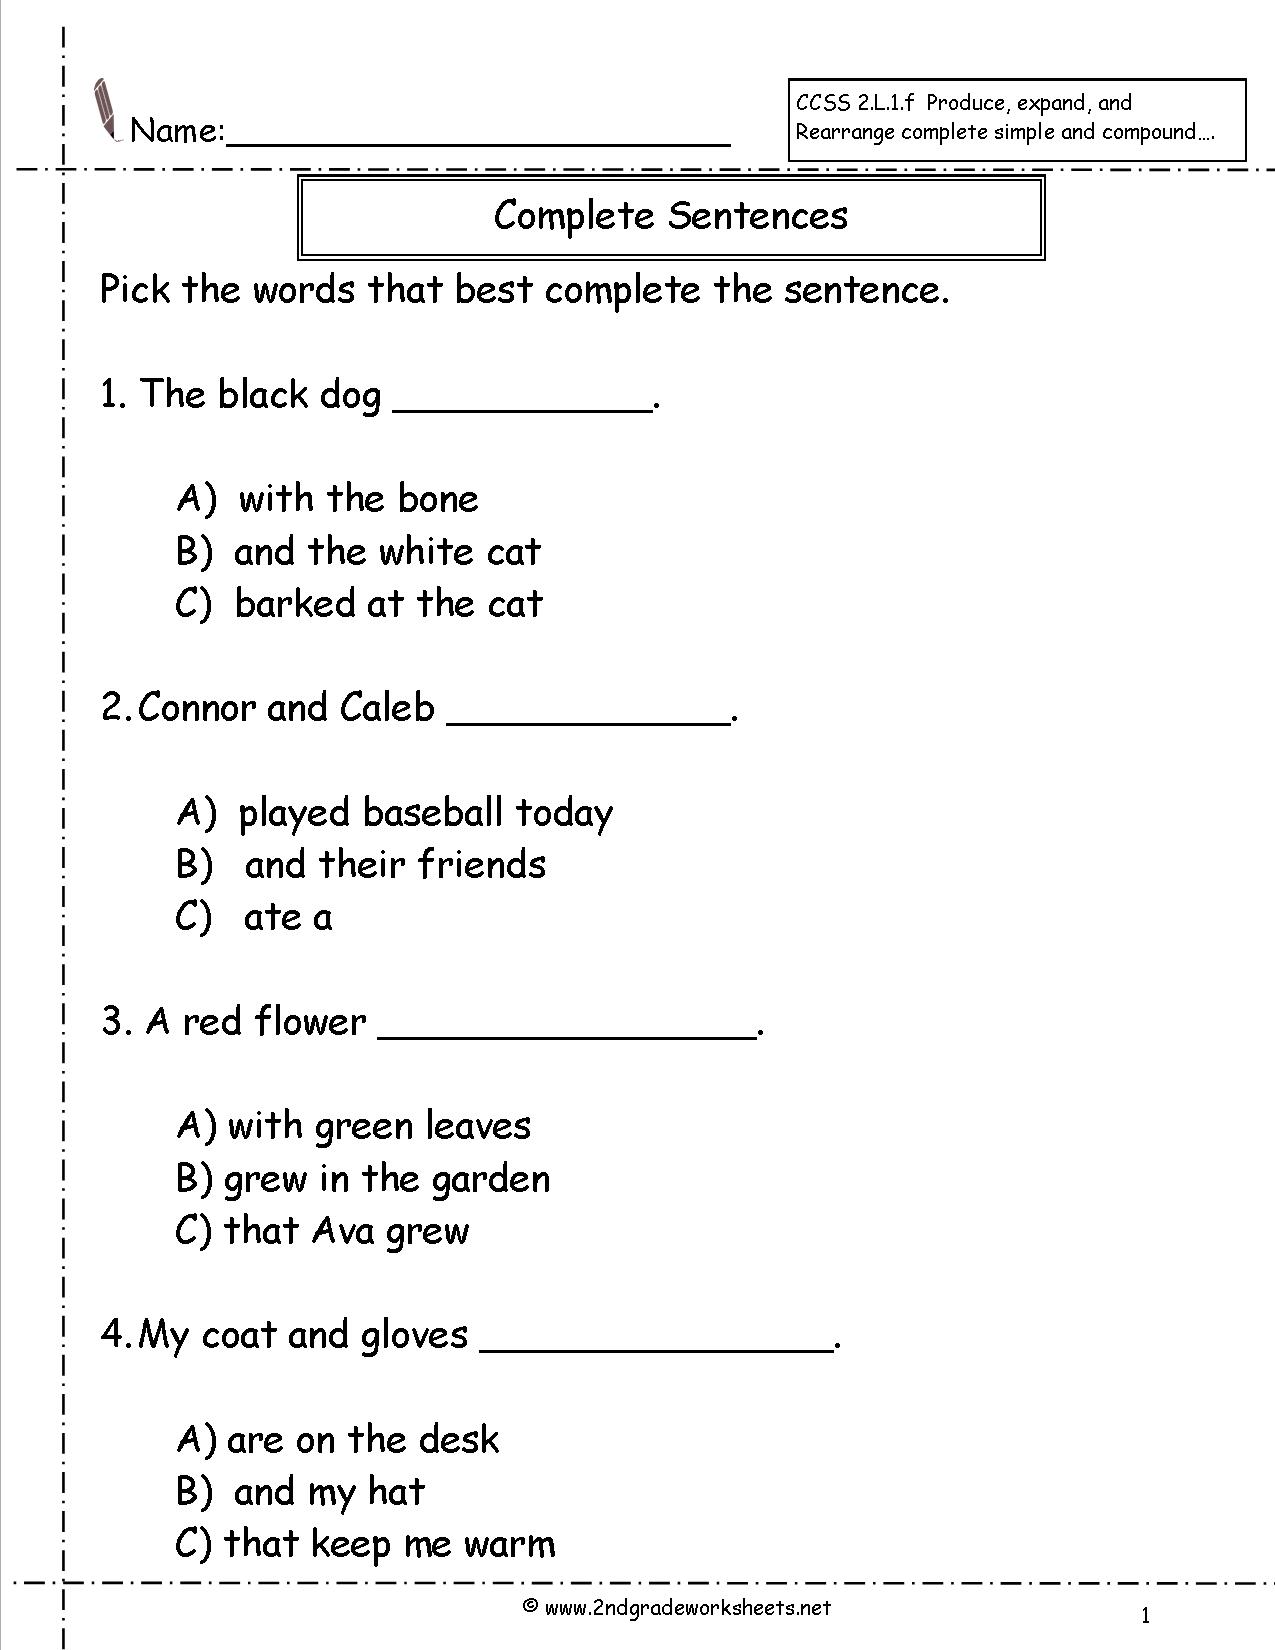 Sentence Completion Worksheets For 1st Grade